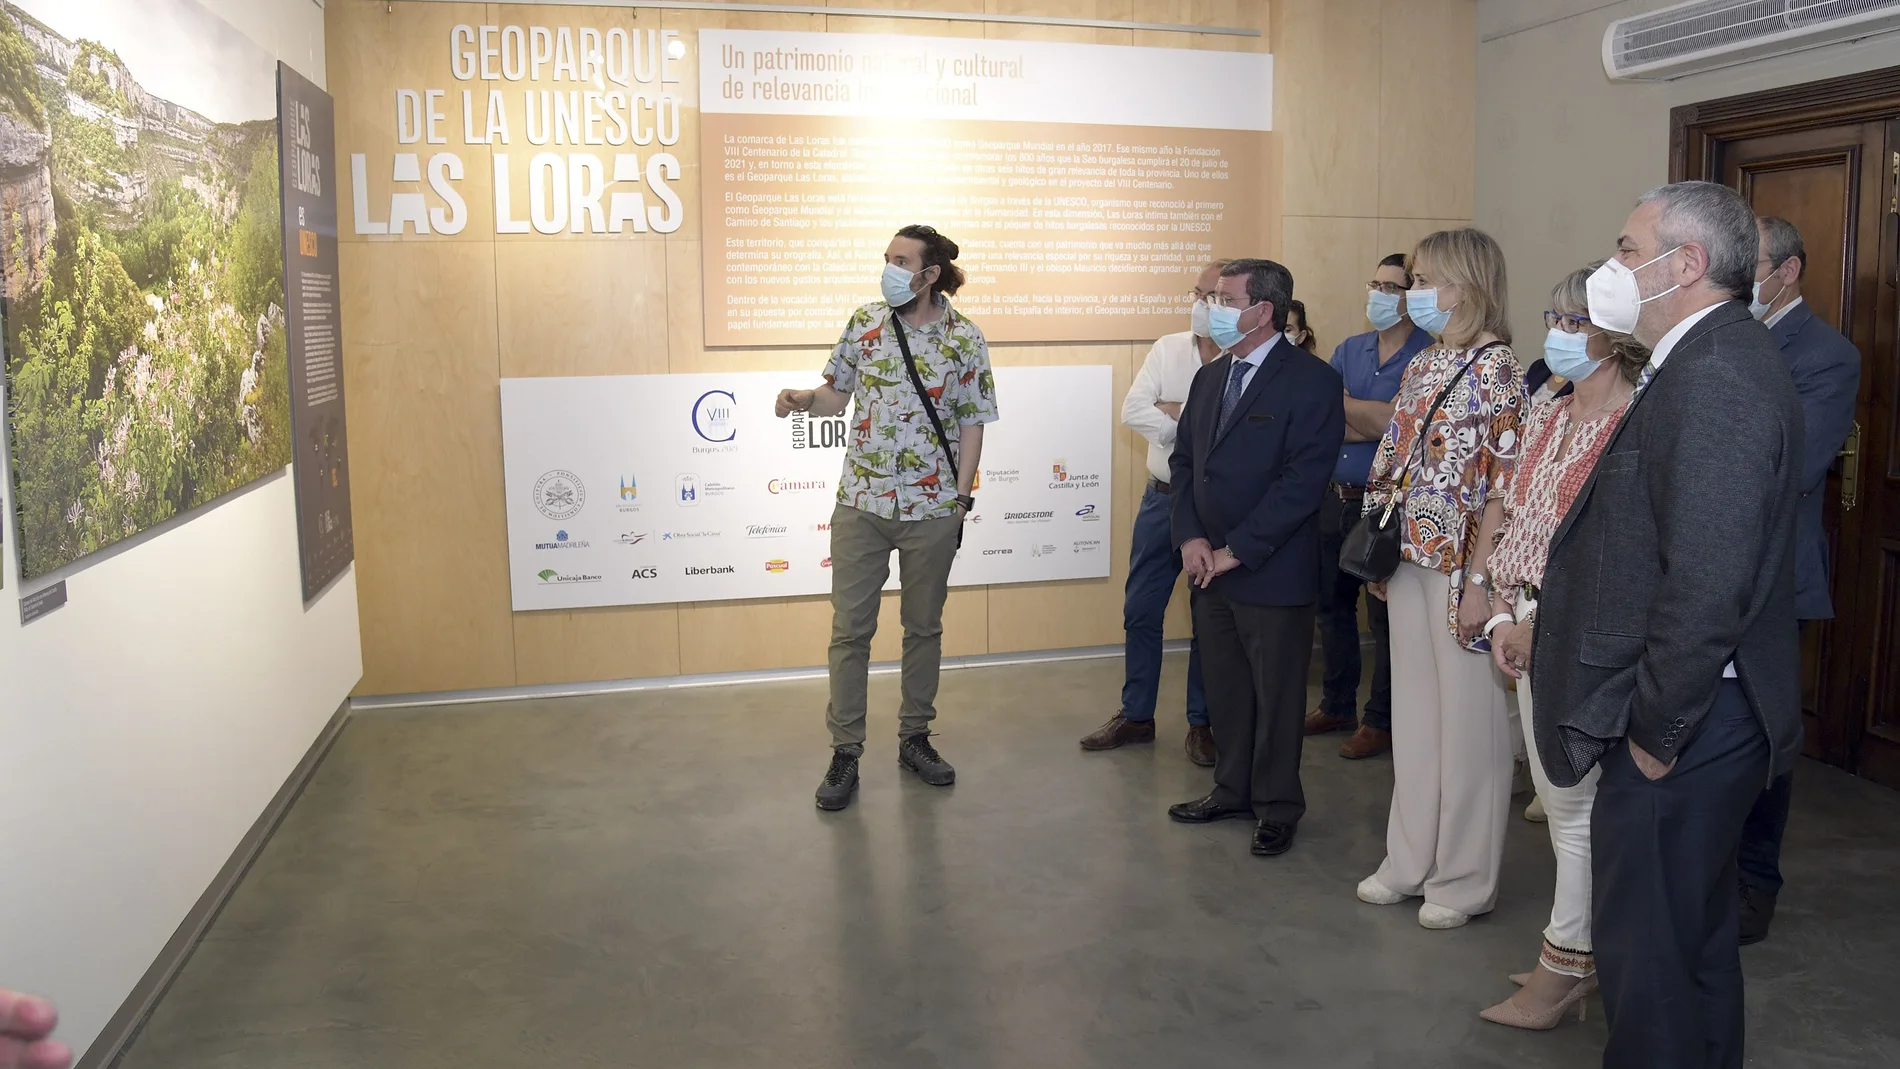 El presidente de la Diputación de Burgos, César Rico, visita la exposición "Geoparque de la Unesco: Las Loras: un patrimonio natural y cultural de relevancia internacional"